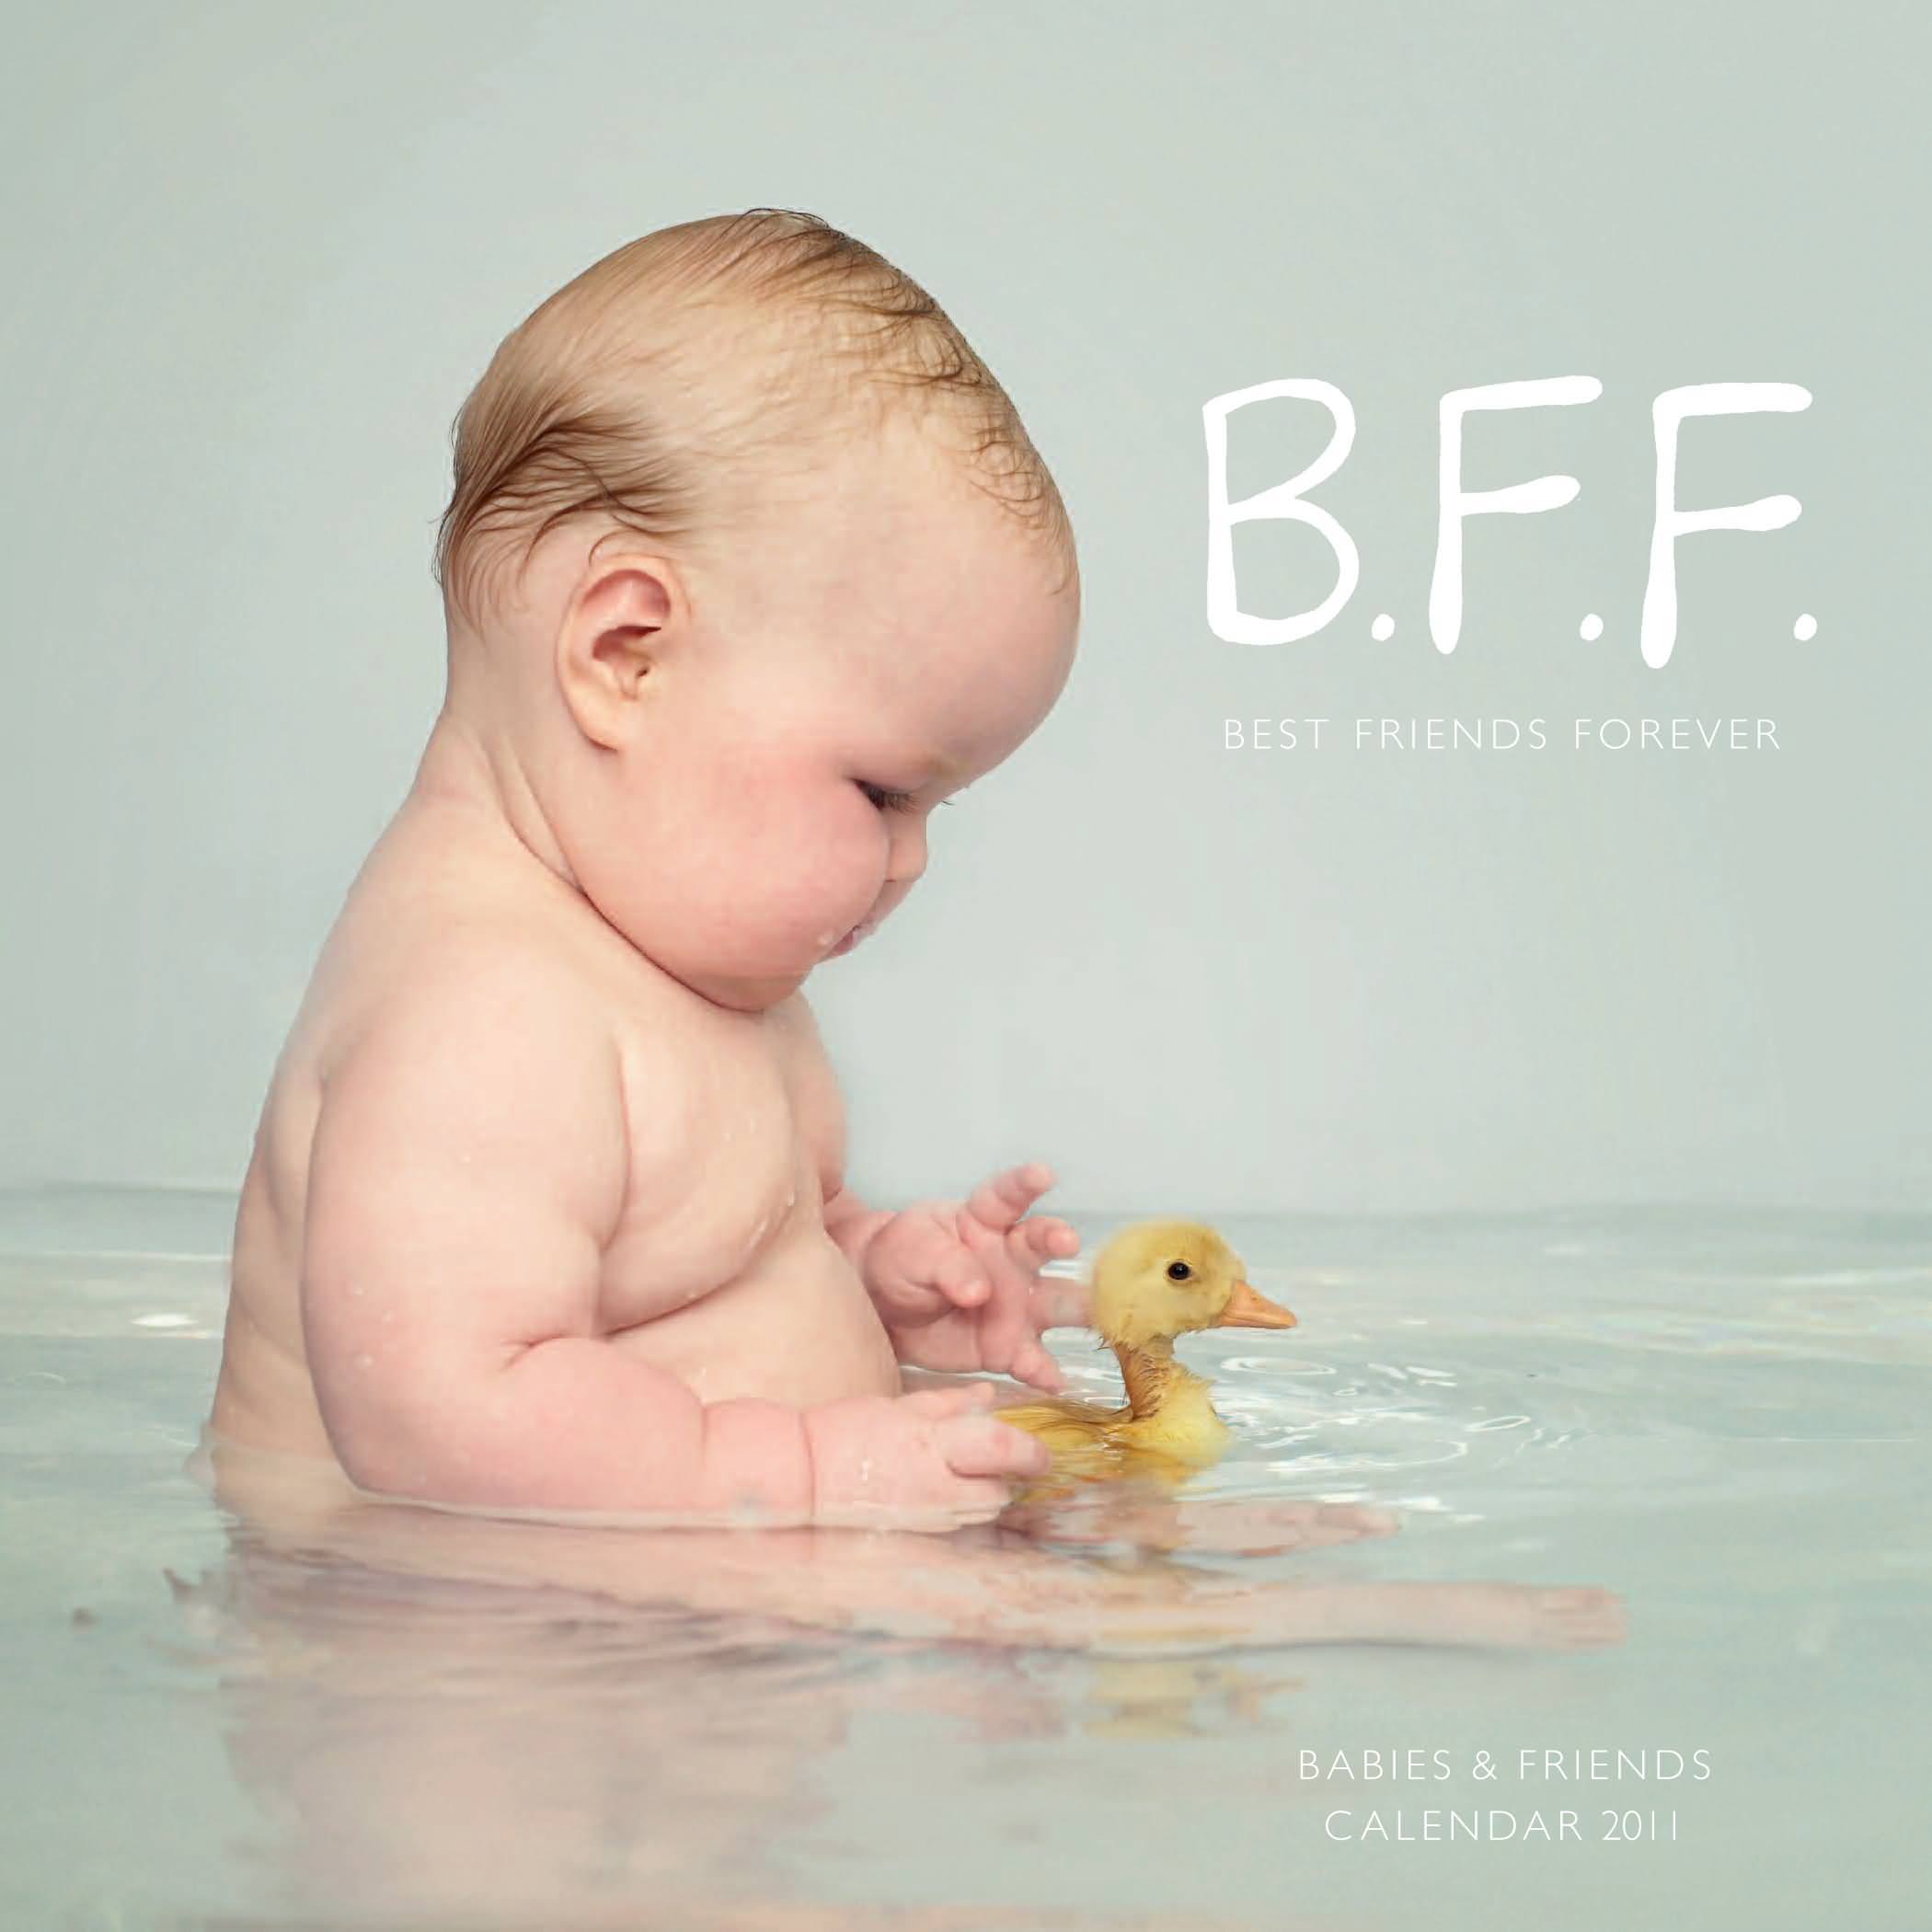 Cute Baby Duck BFF Best Friend Forever HD Wallpaper